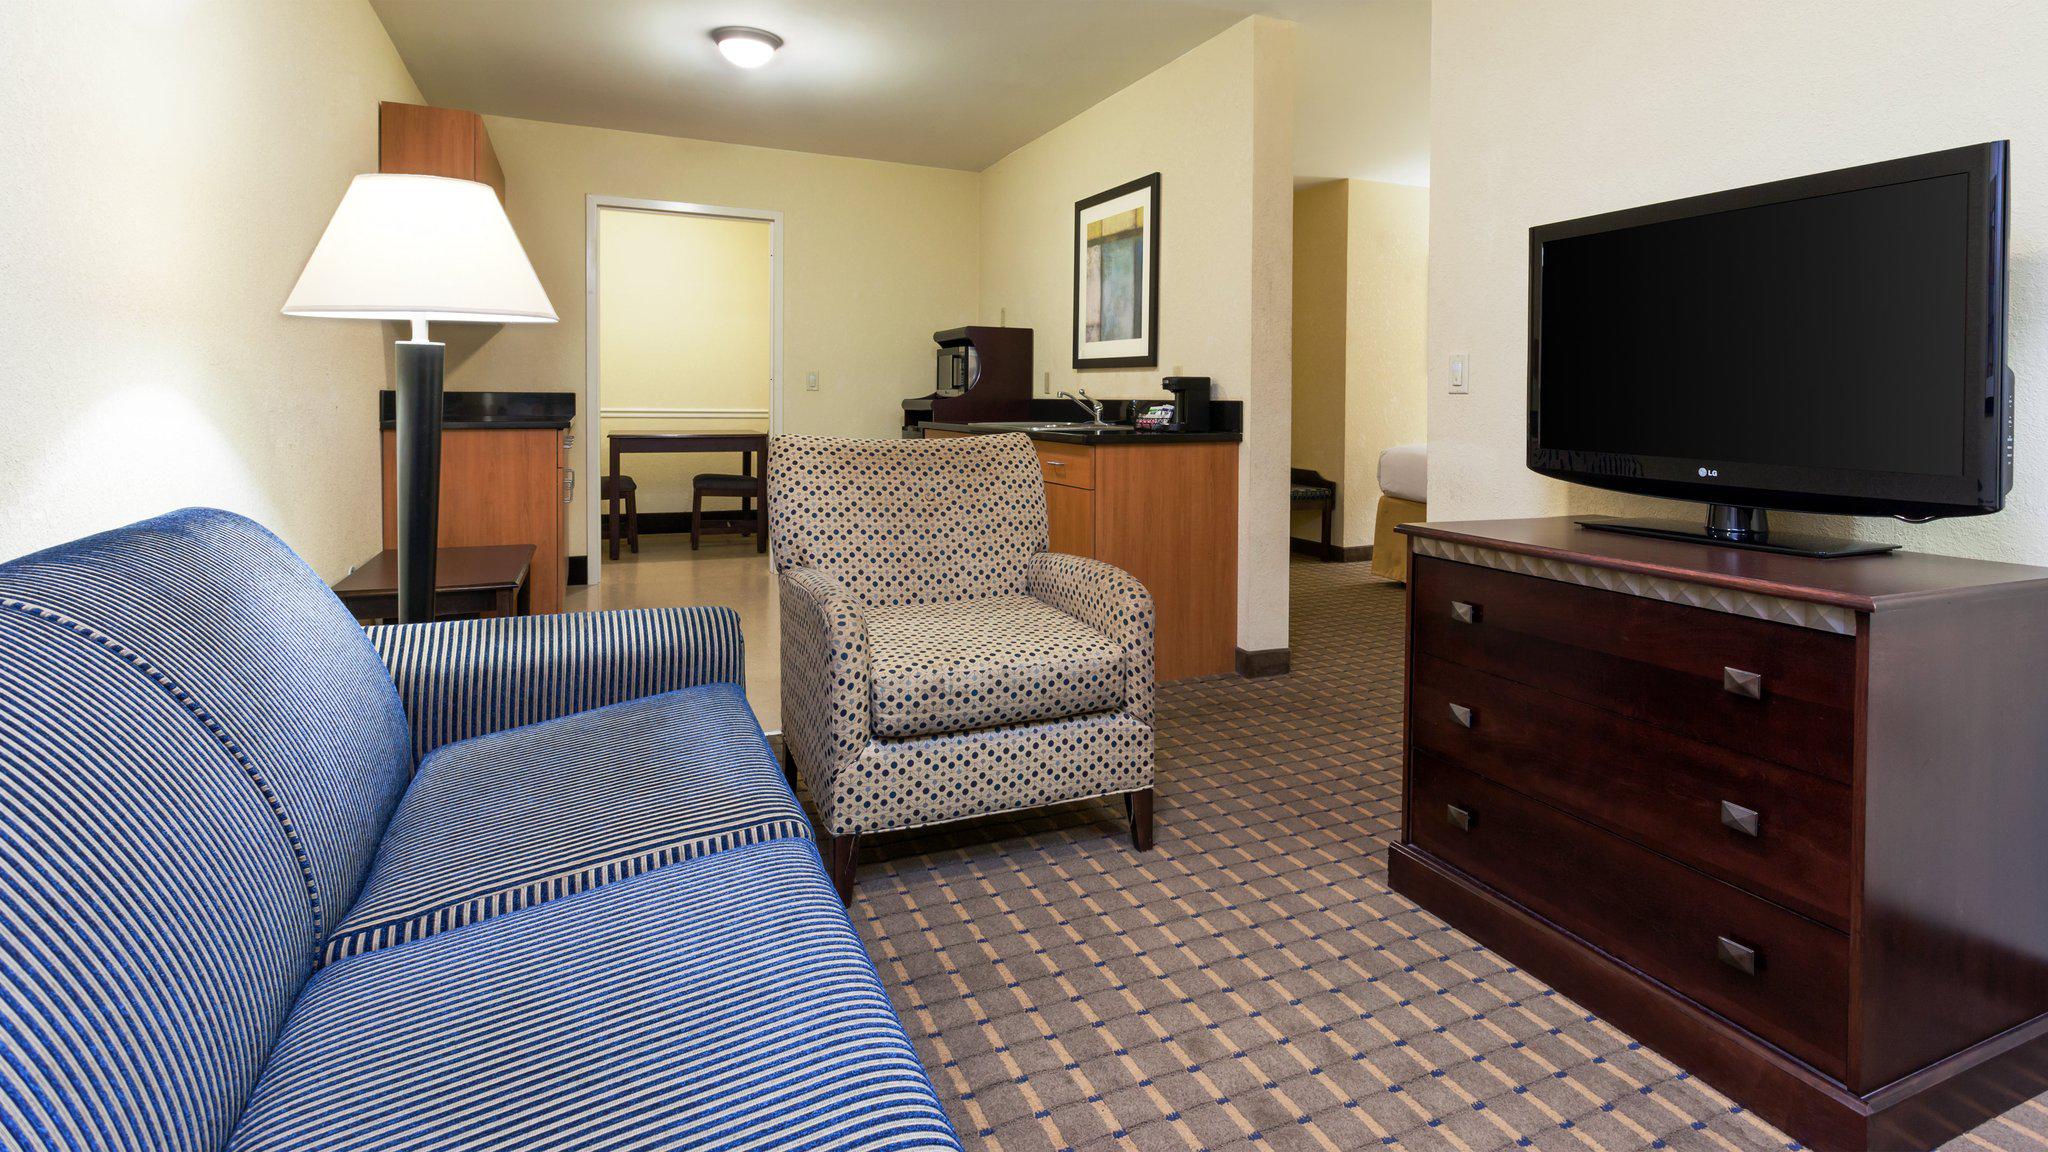 Holiday Inn Express & Suites Allentown West, an IHG Hotel Allentown (610)530-5545